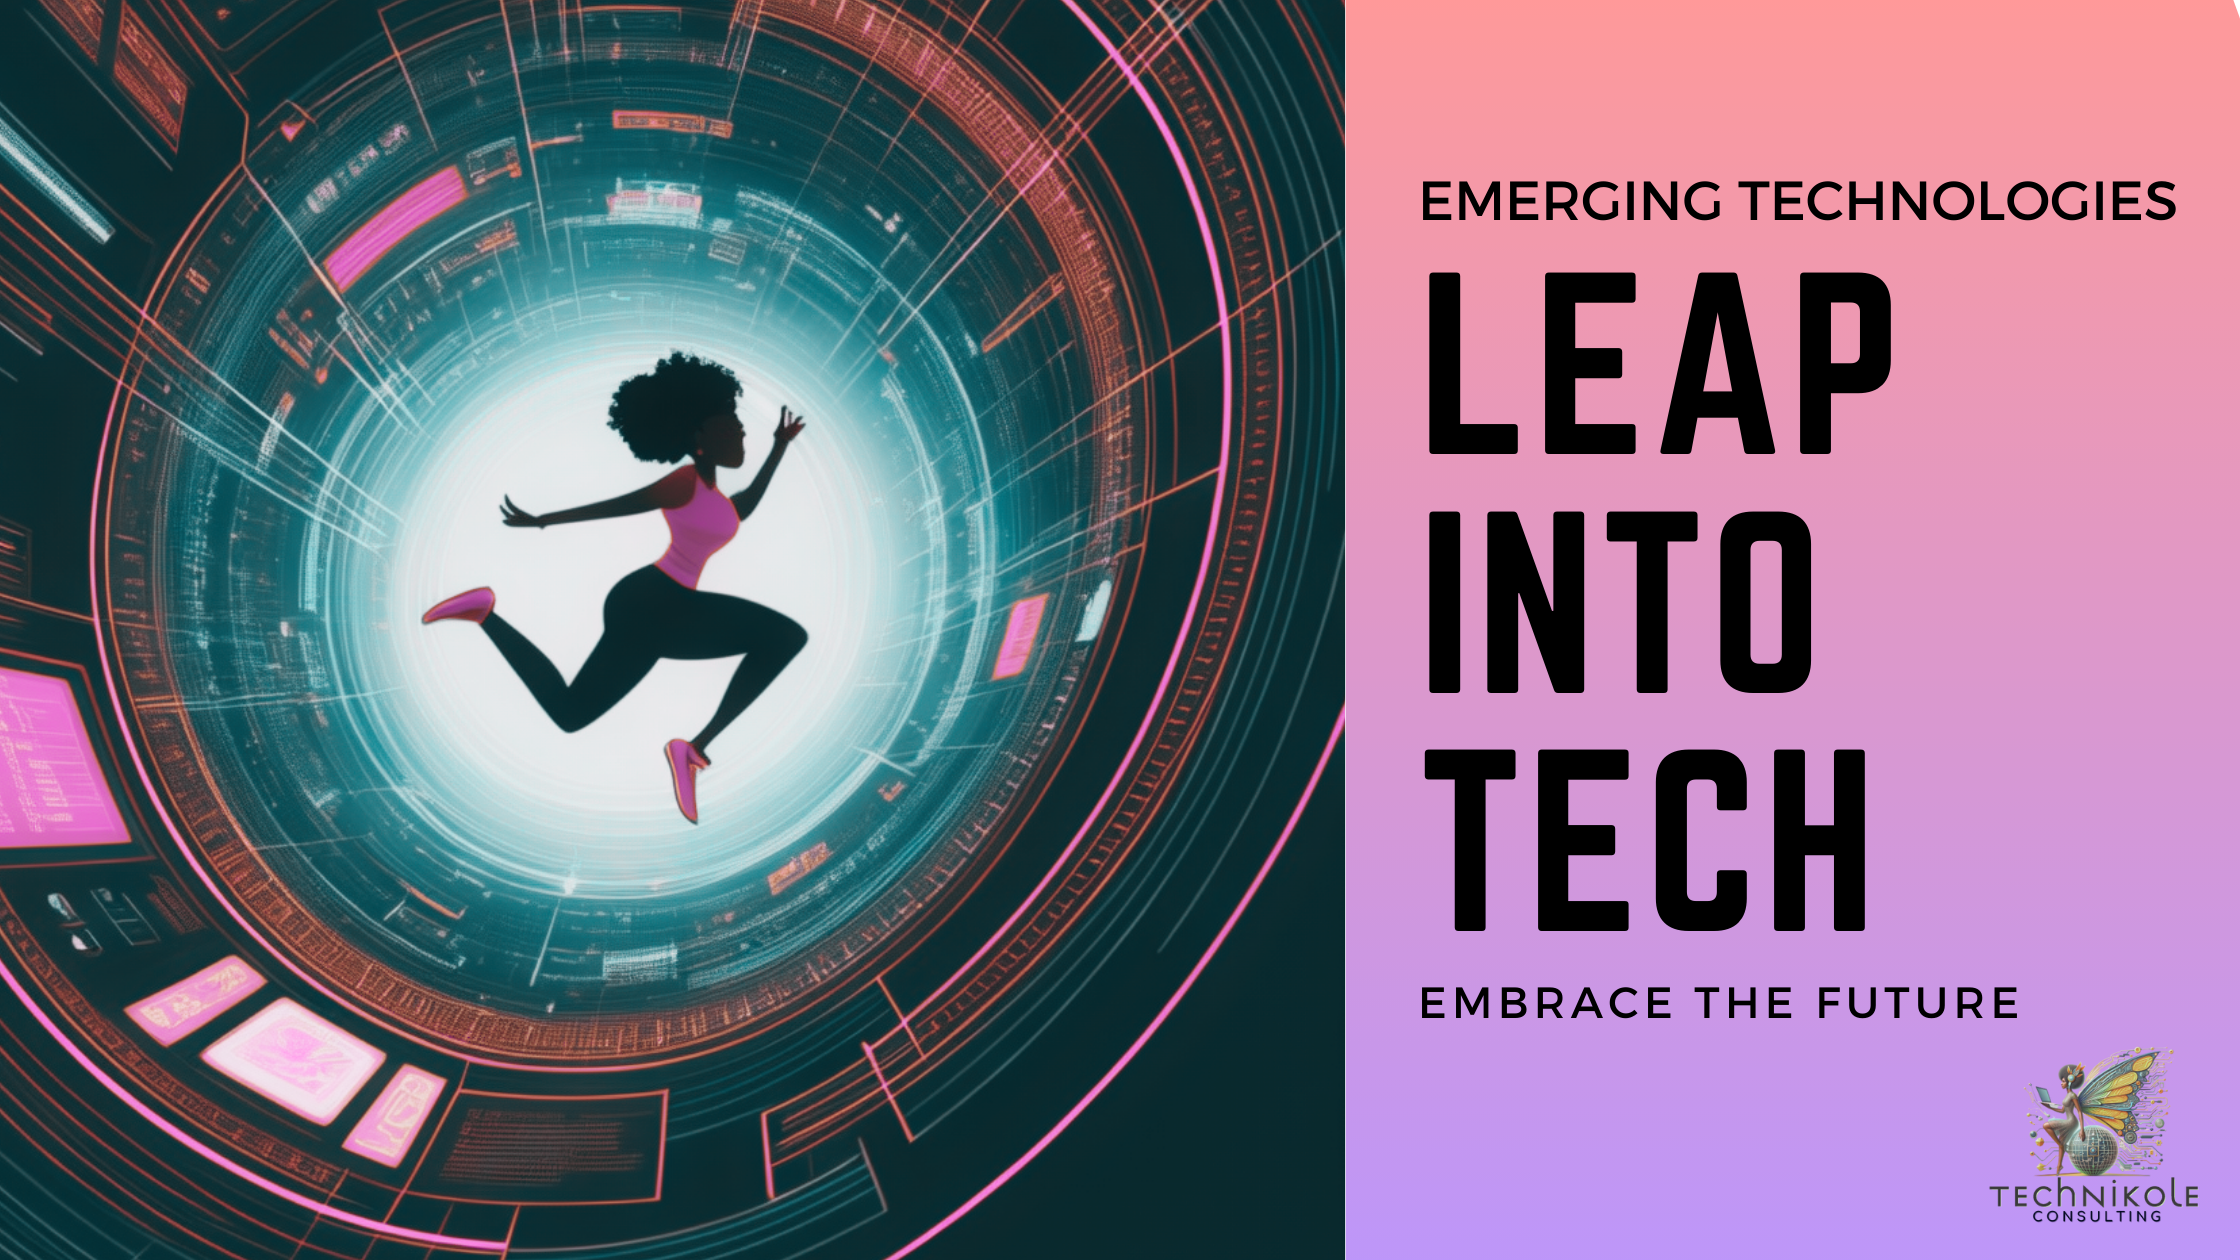 Take the leap into Tech